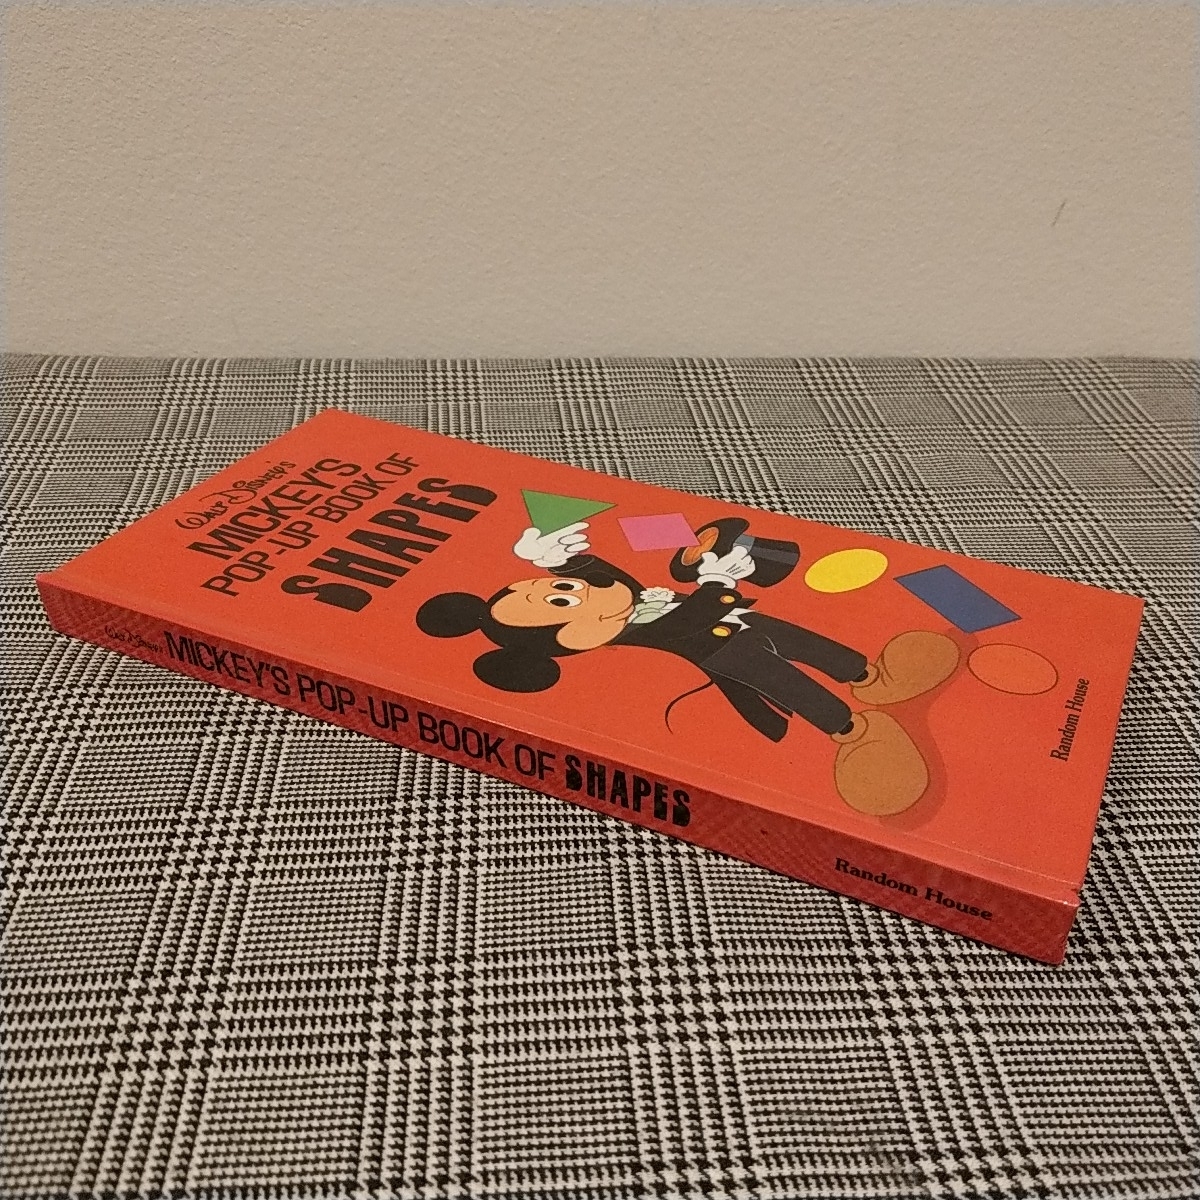 英語　ディズニーしかけ絵本　MICKEY'S POPUP BOOK OF SHAPES ポップアップ　手がきバージョン　1985年発行_画像2